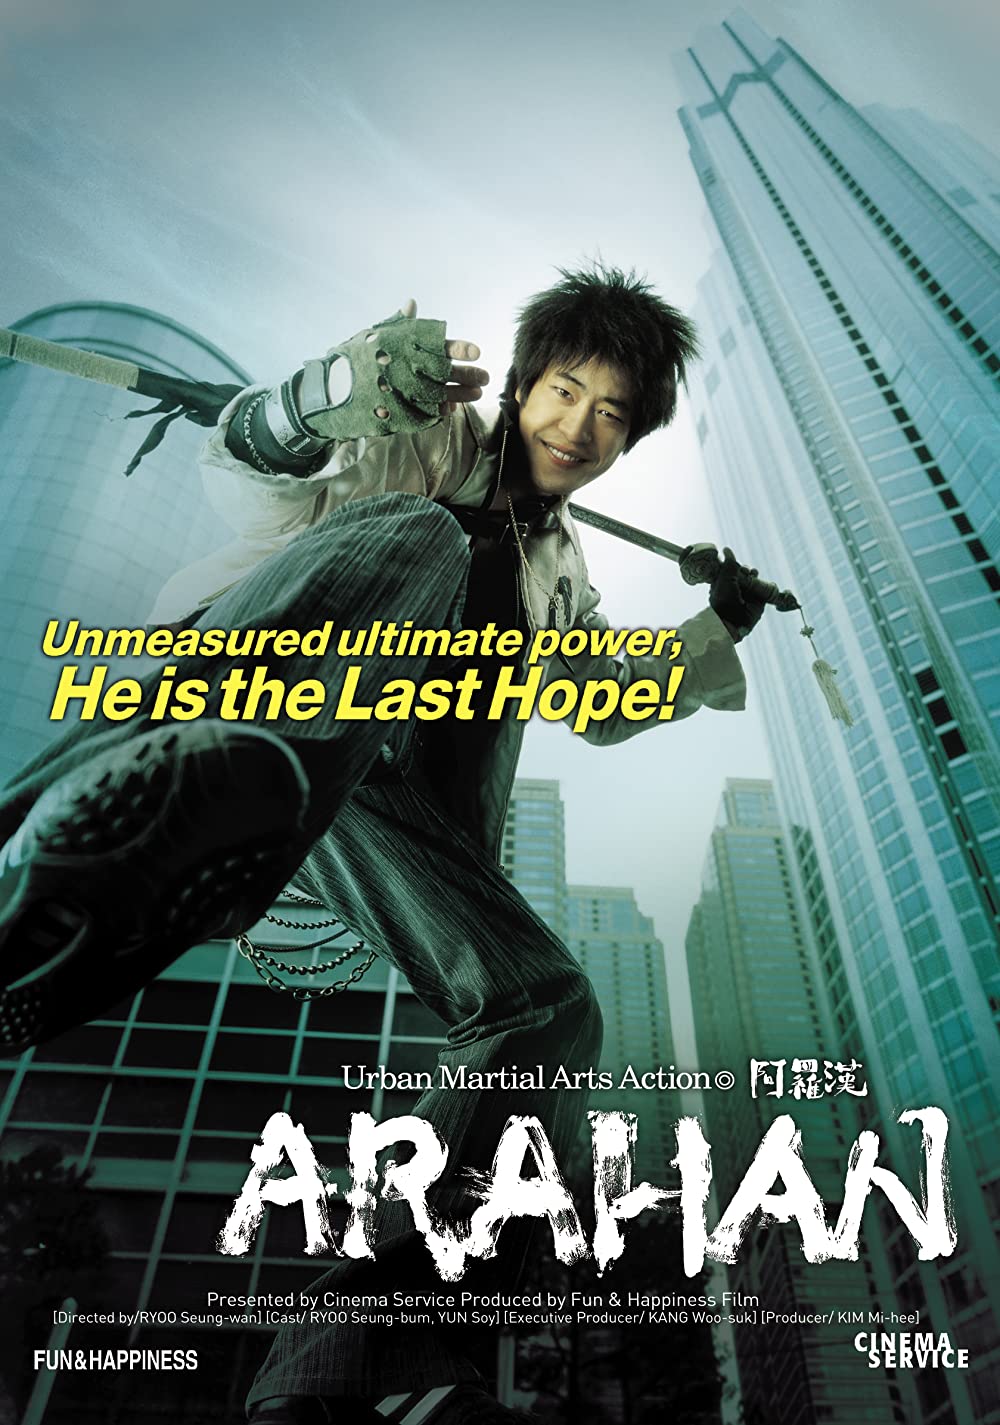 Filmbeschreibung zu Arahan jangpung daejakjeon